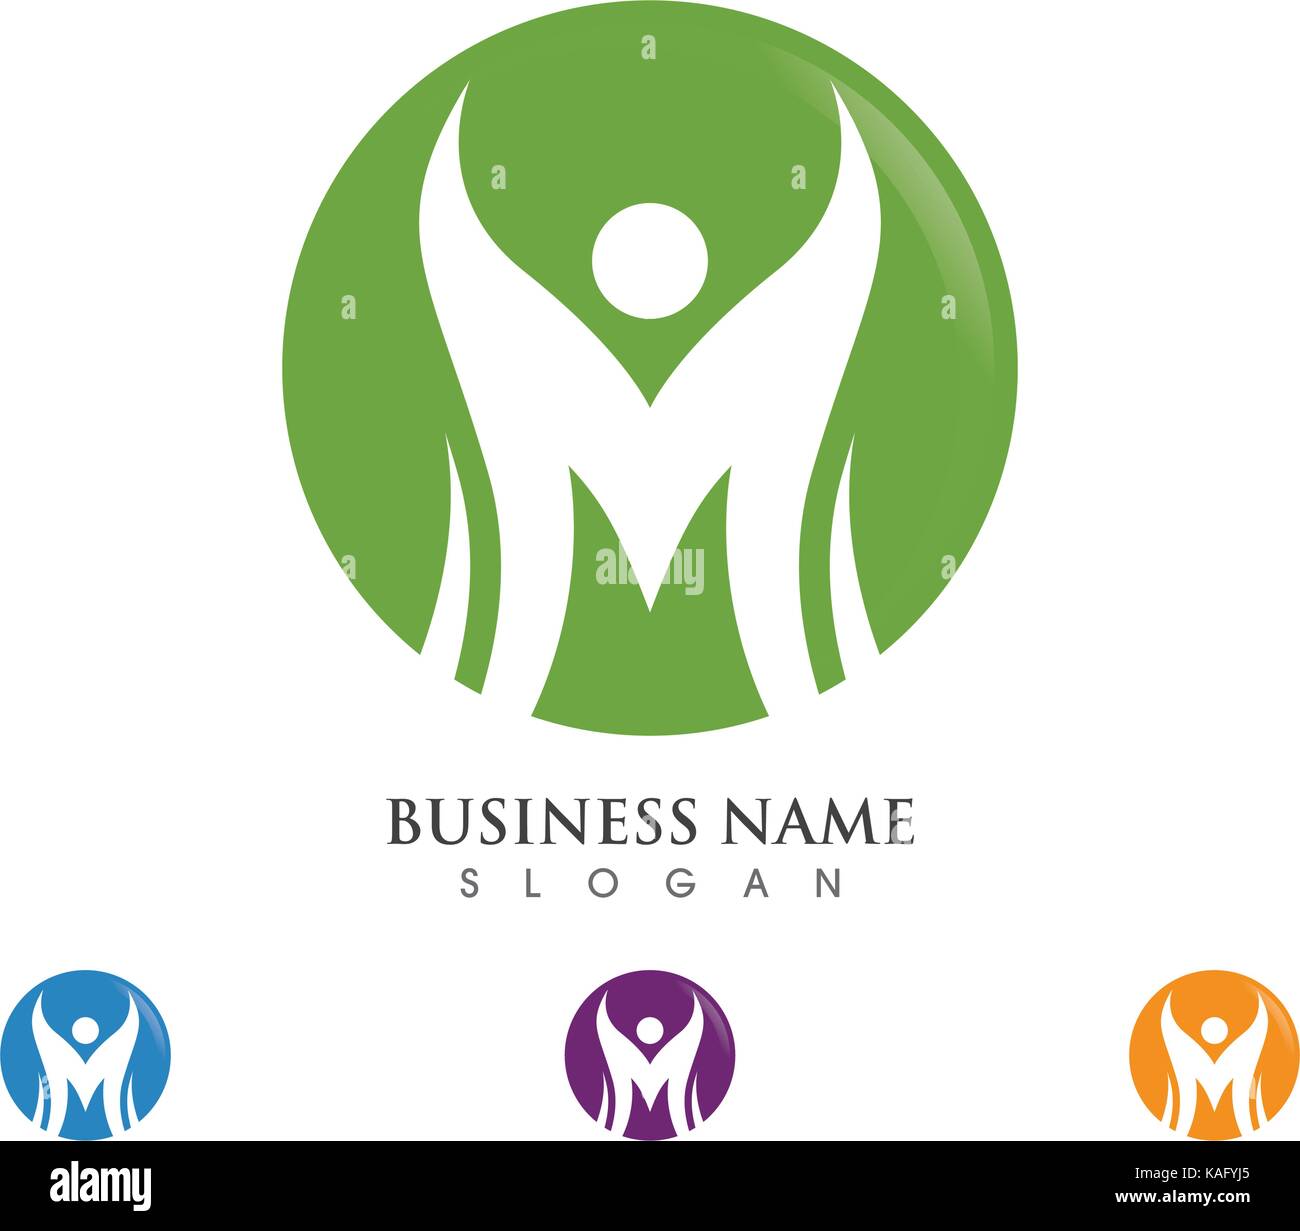 M Letter Logo Template Vector Illustration Stock Vector